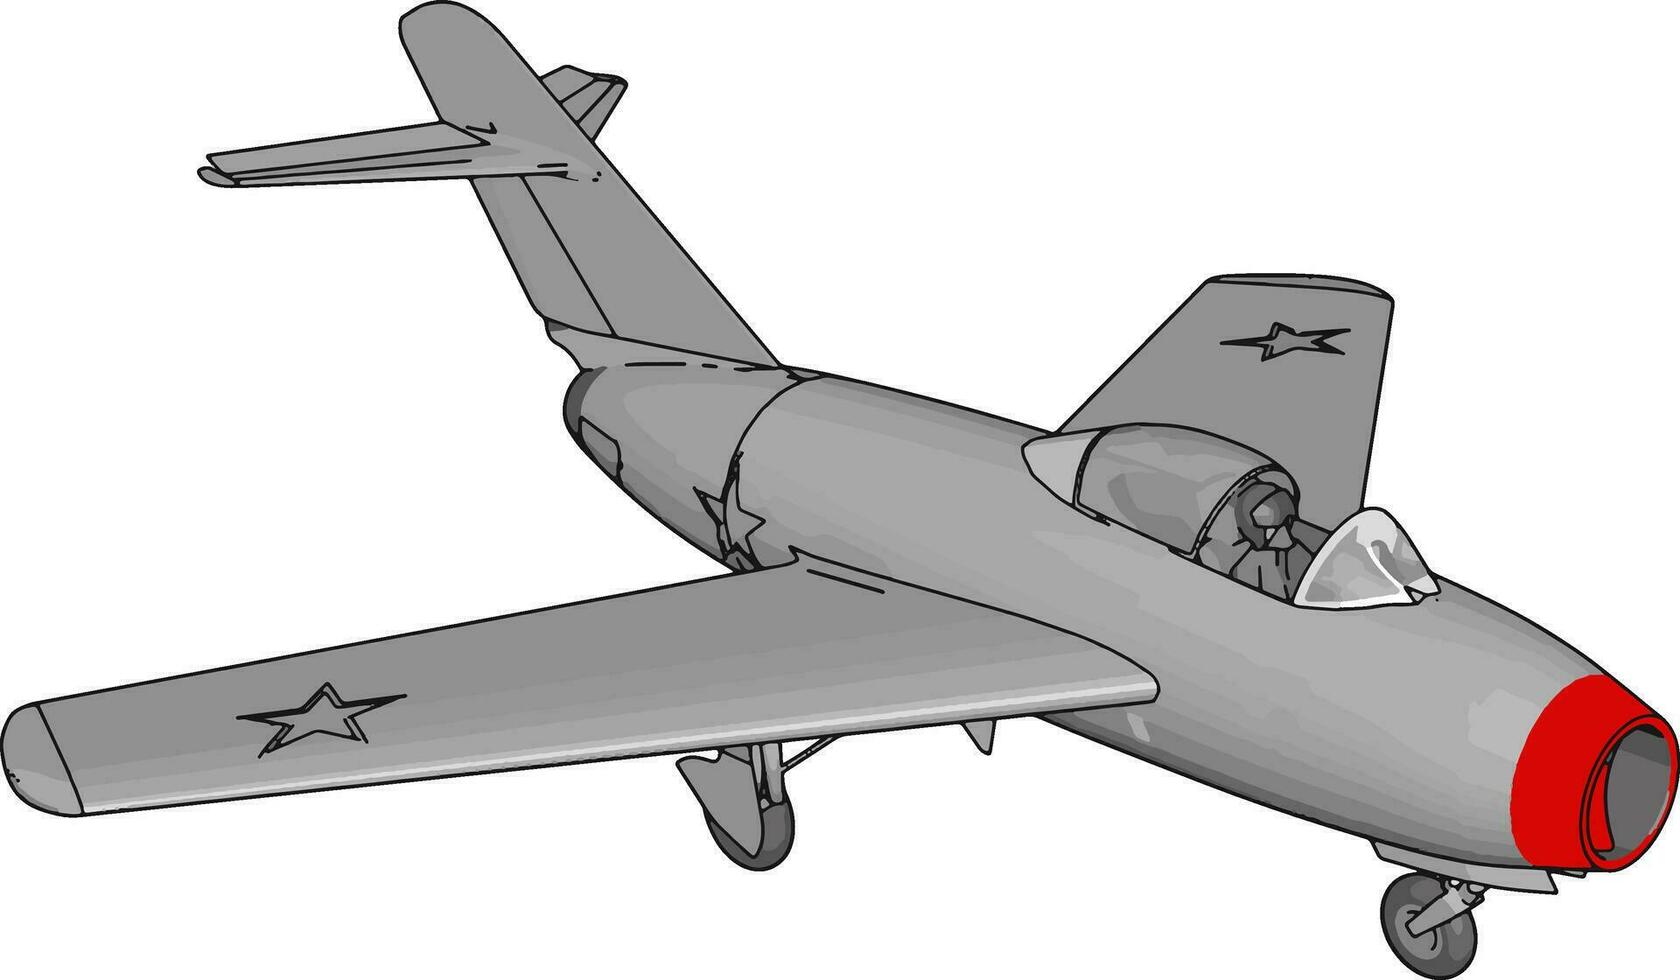 grau Jet Flugzeug mit drei Sterne und rot Nase Vectore Illustration auf Weiß Hintergrund vektor